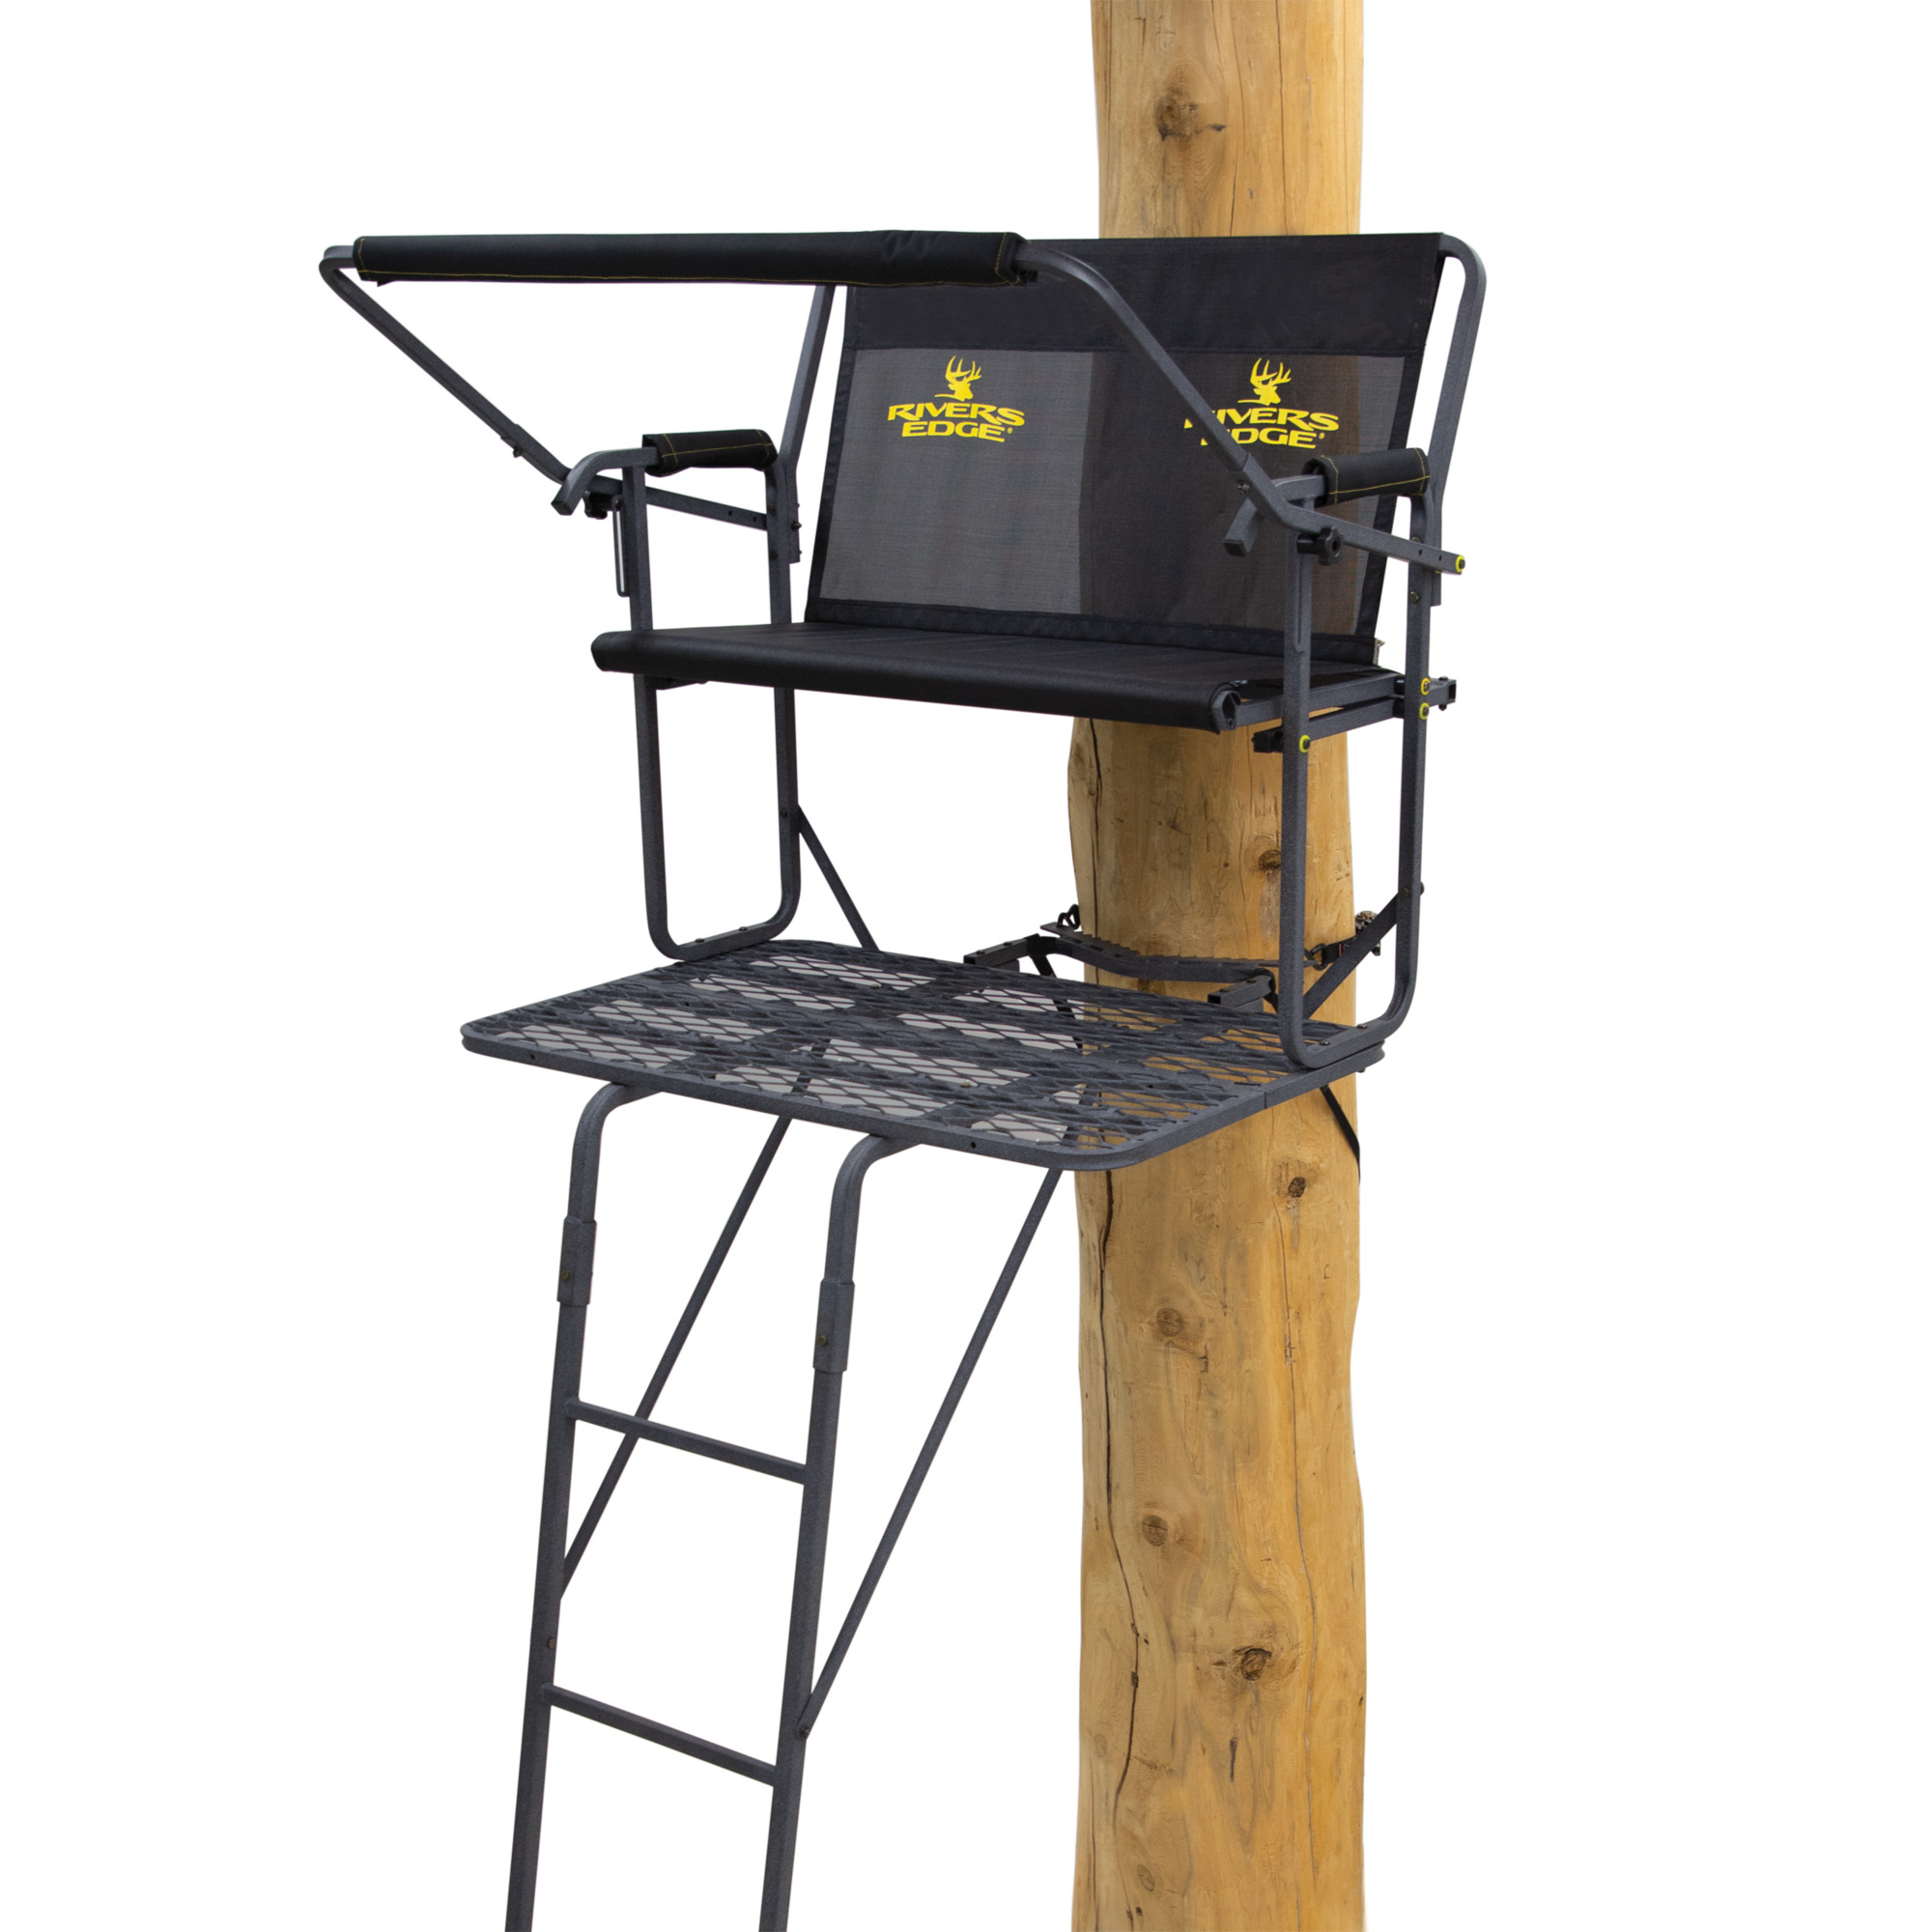 Rivers Edge, TwoPlex 2-Man Ladder Stand, 17â1â Height, Color Black, Material Steel, Model RE665